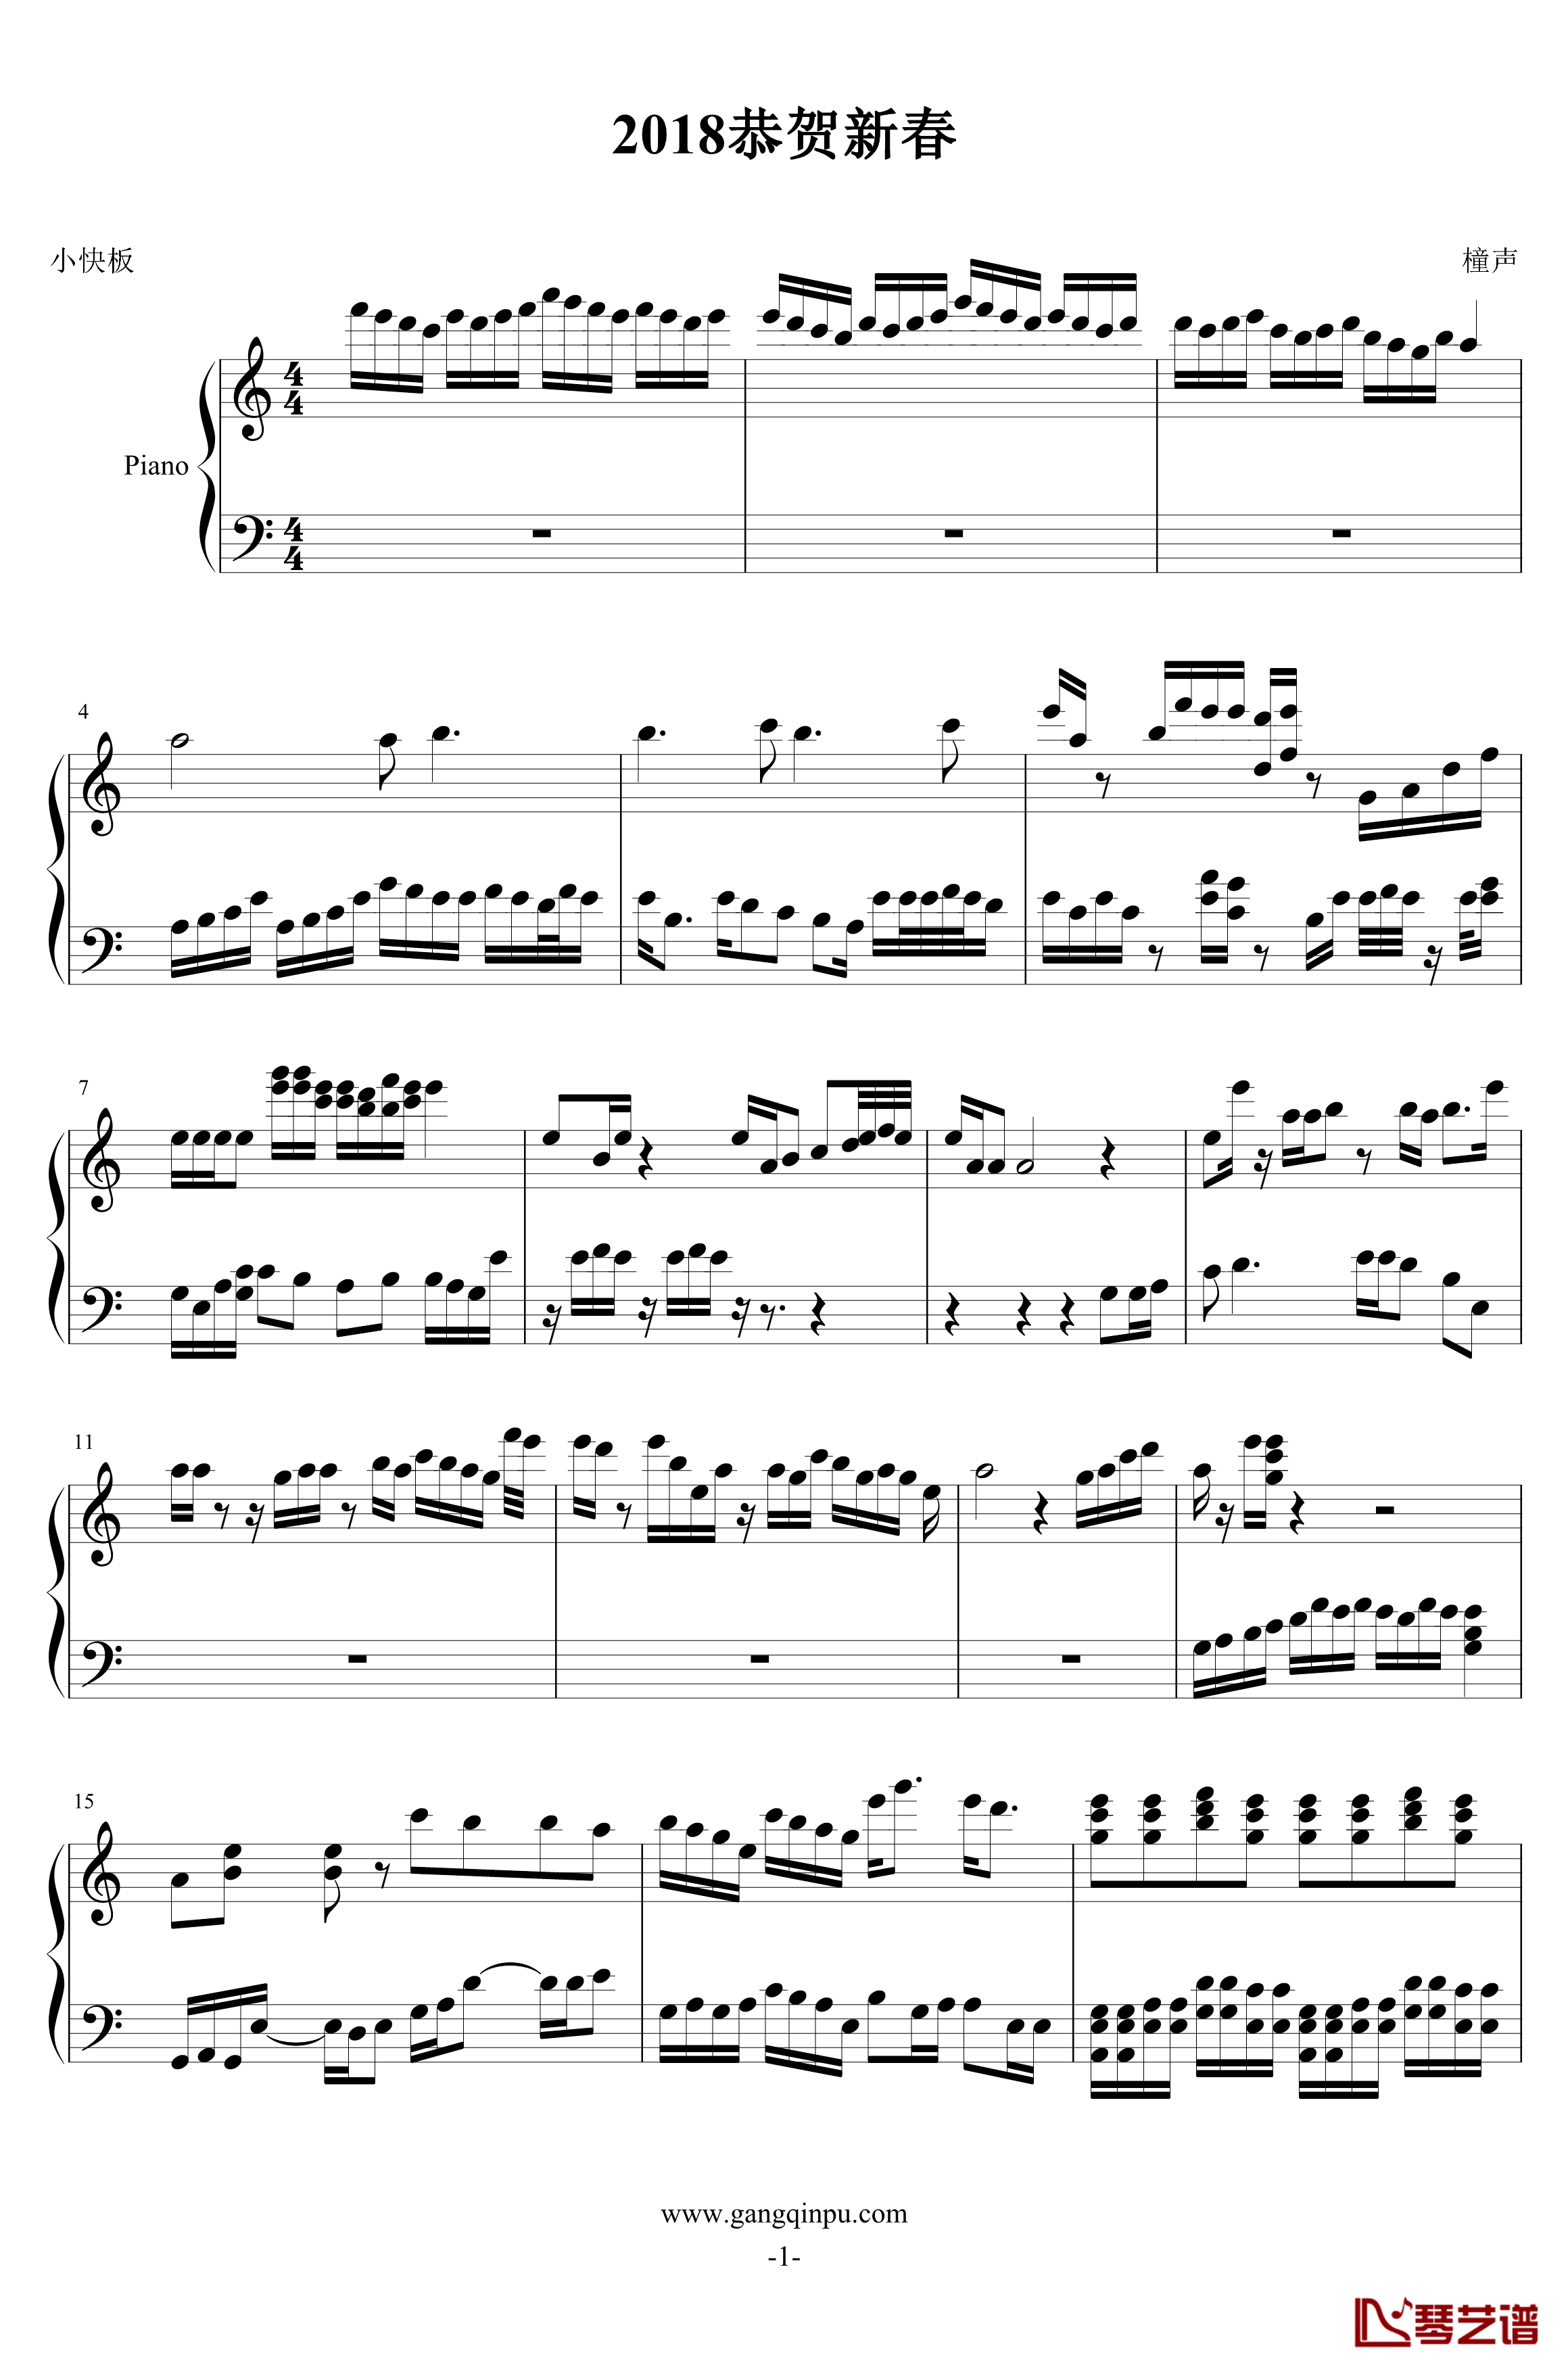 数码宝贝组曲钢琴谱-第三-数码宝贝1